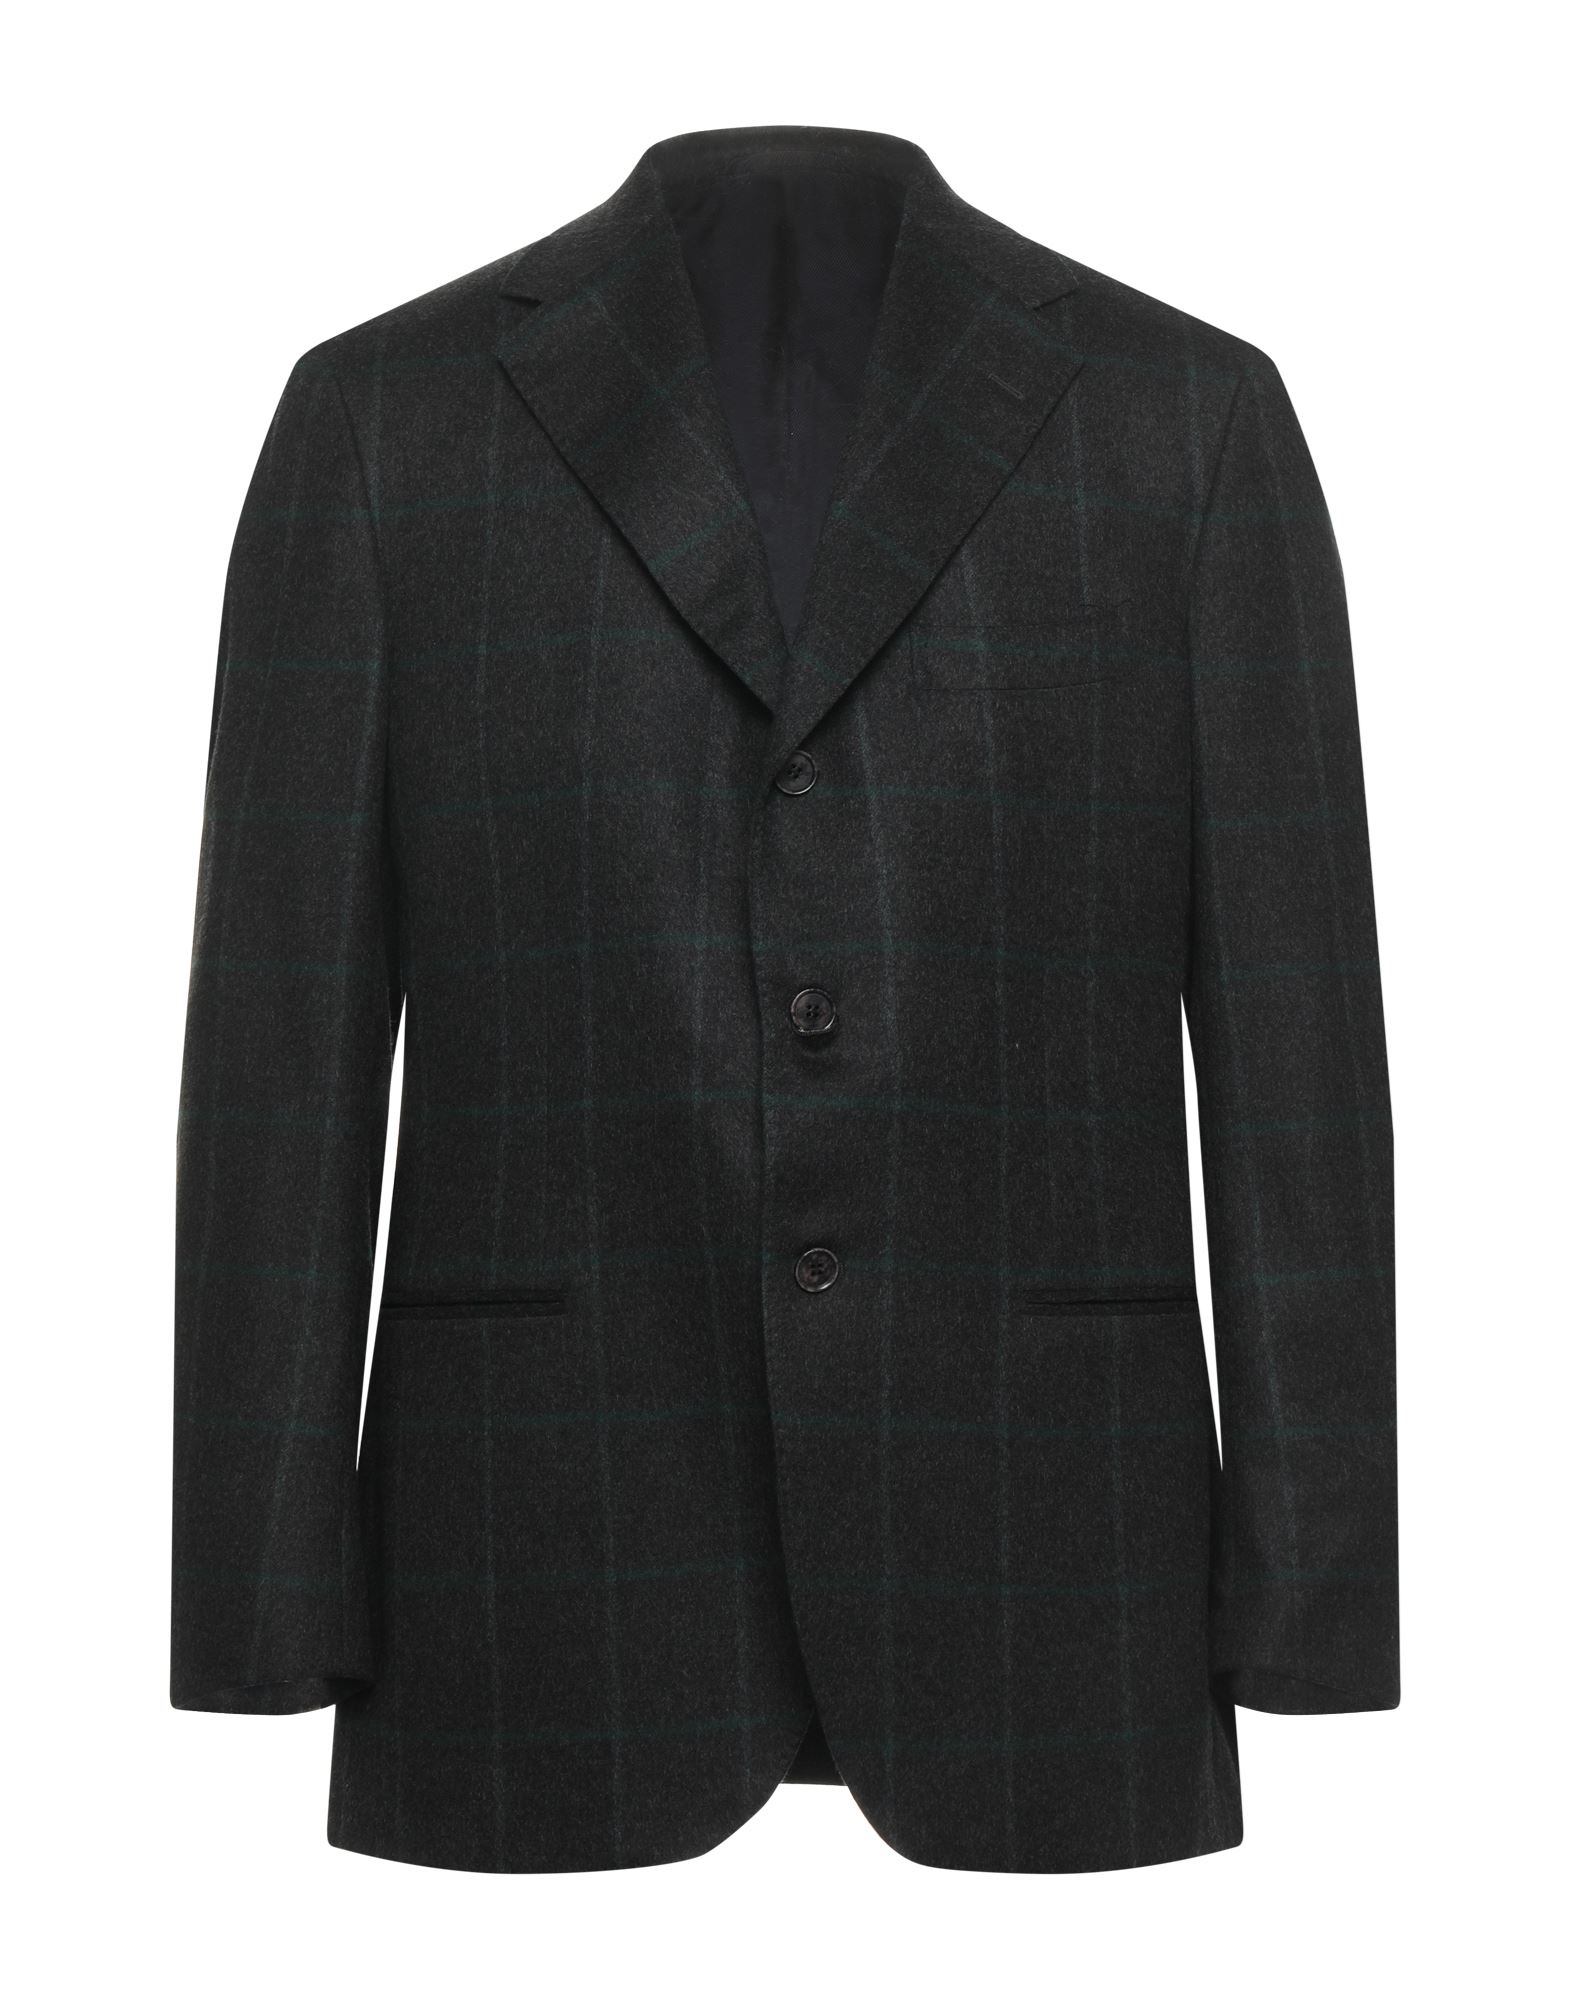 SARTORIO Suit jackets | Smart Closet